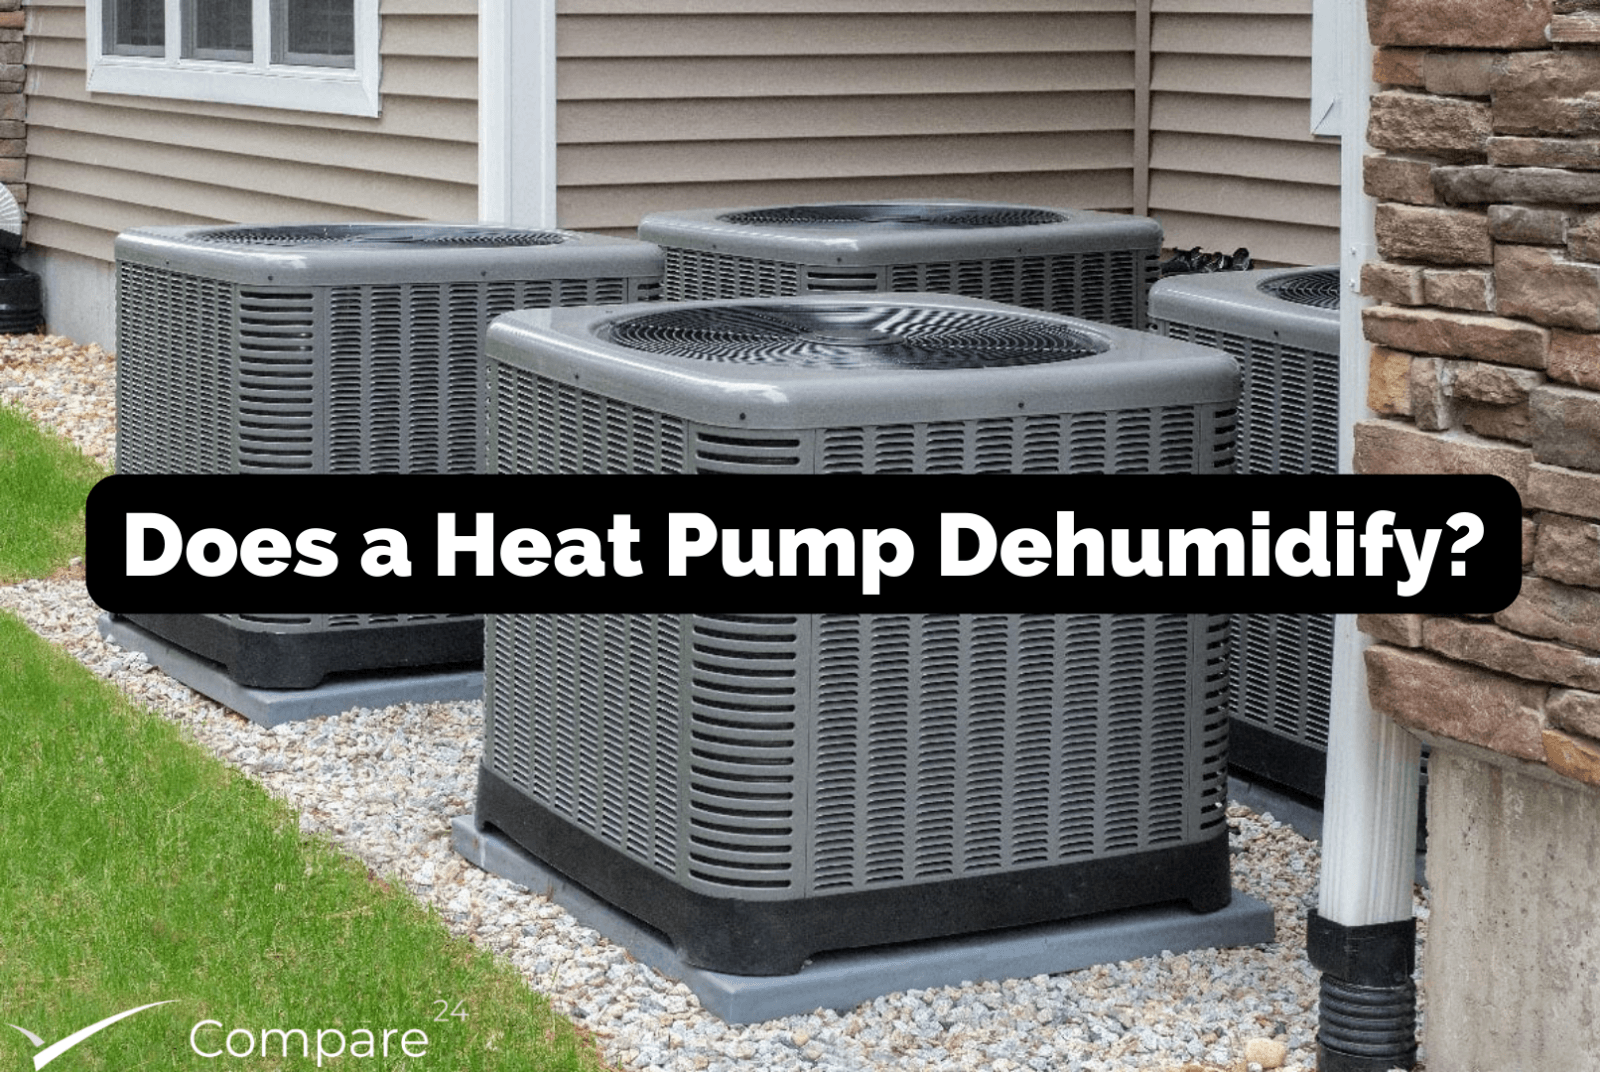 Does a heat pump dehumidify